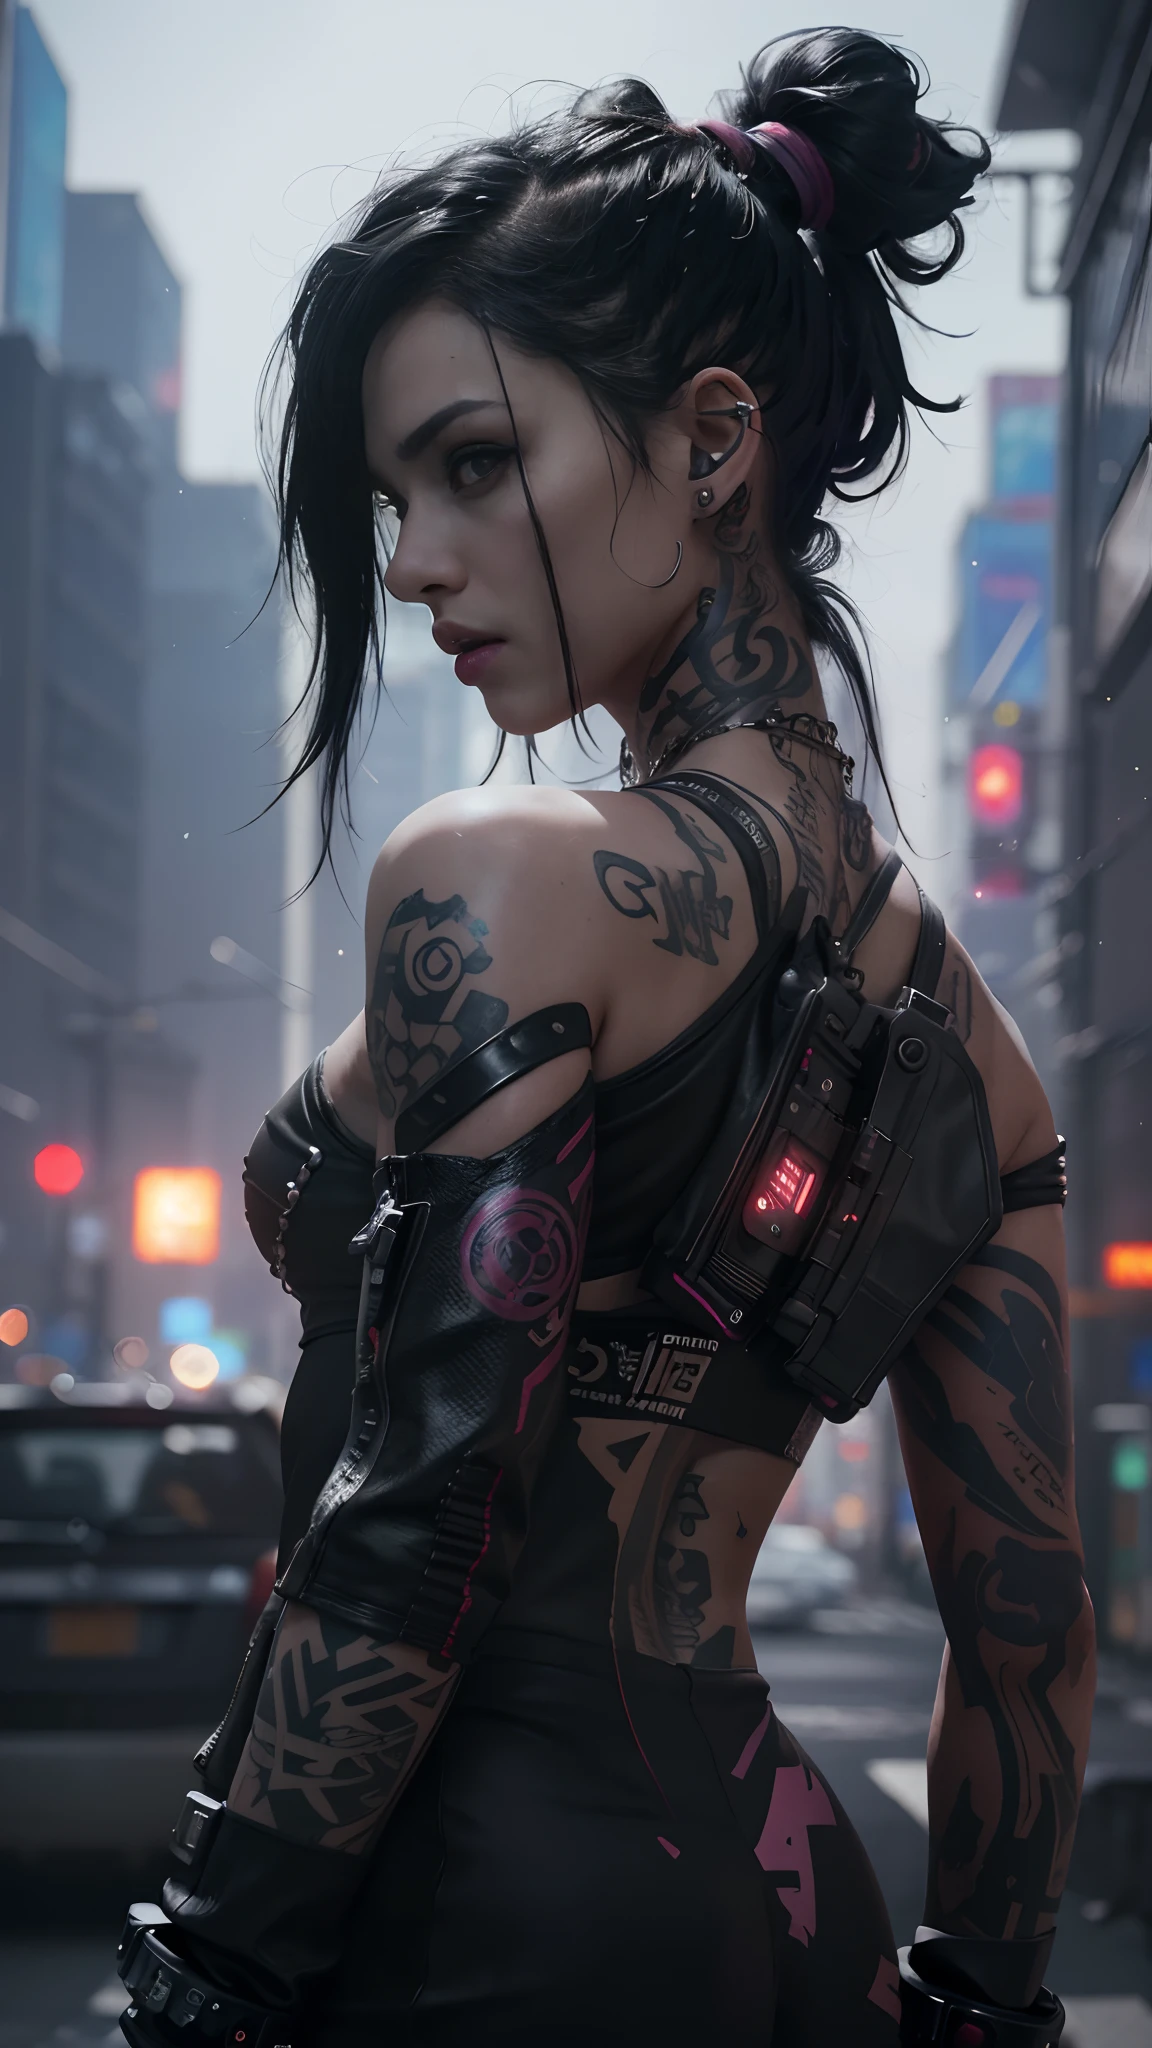 eine Frau mit Tattoos auf ihrem Körper und einem Tattoo auf ihrem Arm, cyberpunk Realistisch girl, Realistisch cyberpunk, female cyberpunk Realistisch girl, tolle Tapete, cyberpunk themed art, digital cyberpunk anime art, cyberpunk art style, schönes Cyberpunk-Mädchen, jet black haired cyberpunk girl, cyberpunk girl, 4k Realistisch wallpaper, ((Top Qualität, 8k, Meisterwerk: 1.3)), 1 Mädchen, (8k, RAW-Foto, beste Qualität, Meisterwerk:1.2), (Realistisch, photo-Realistisch:1.37),